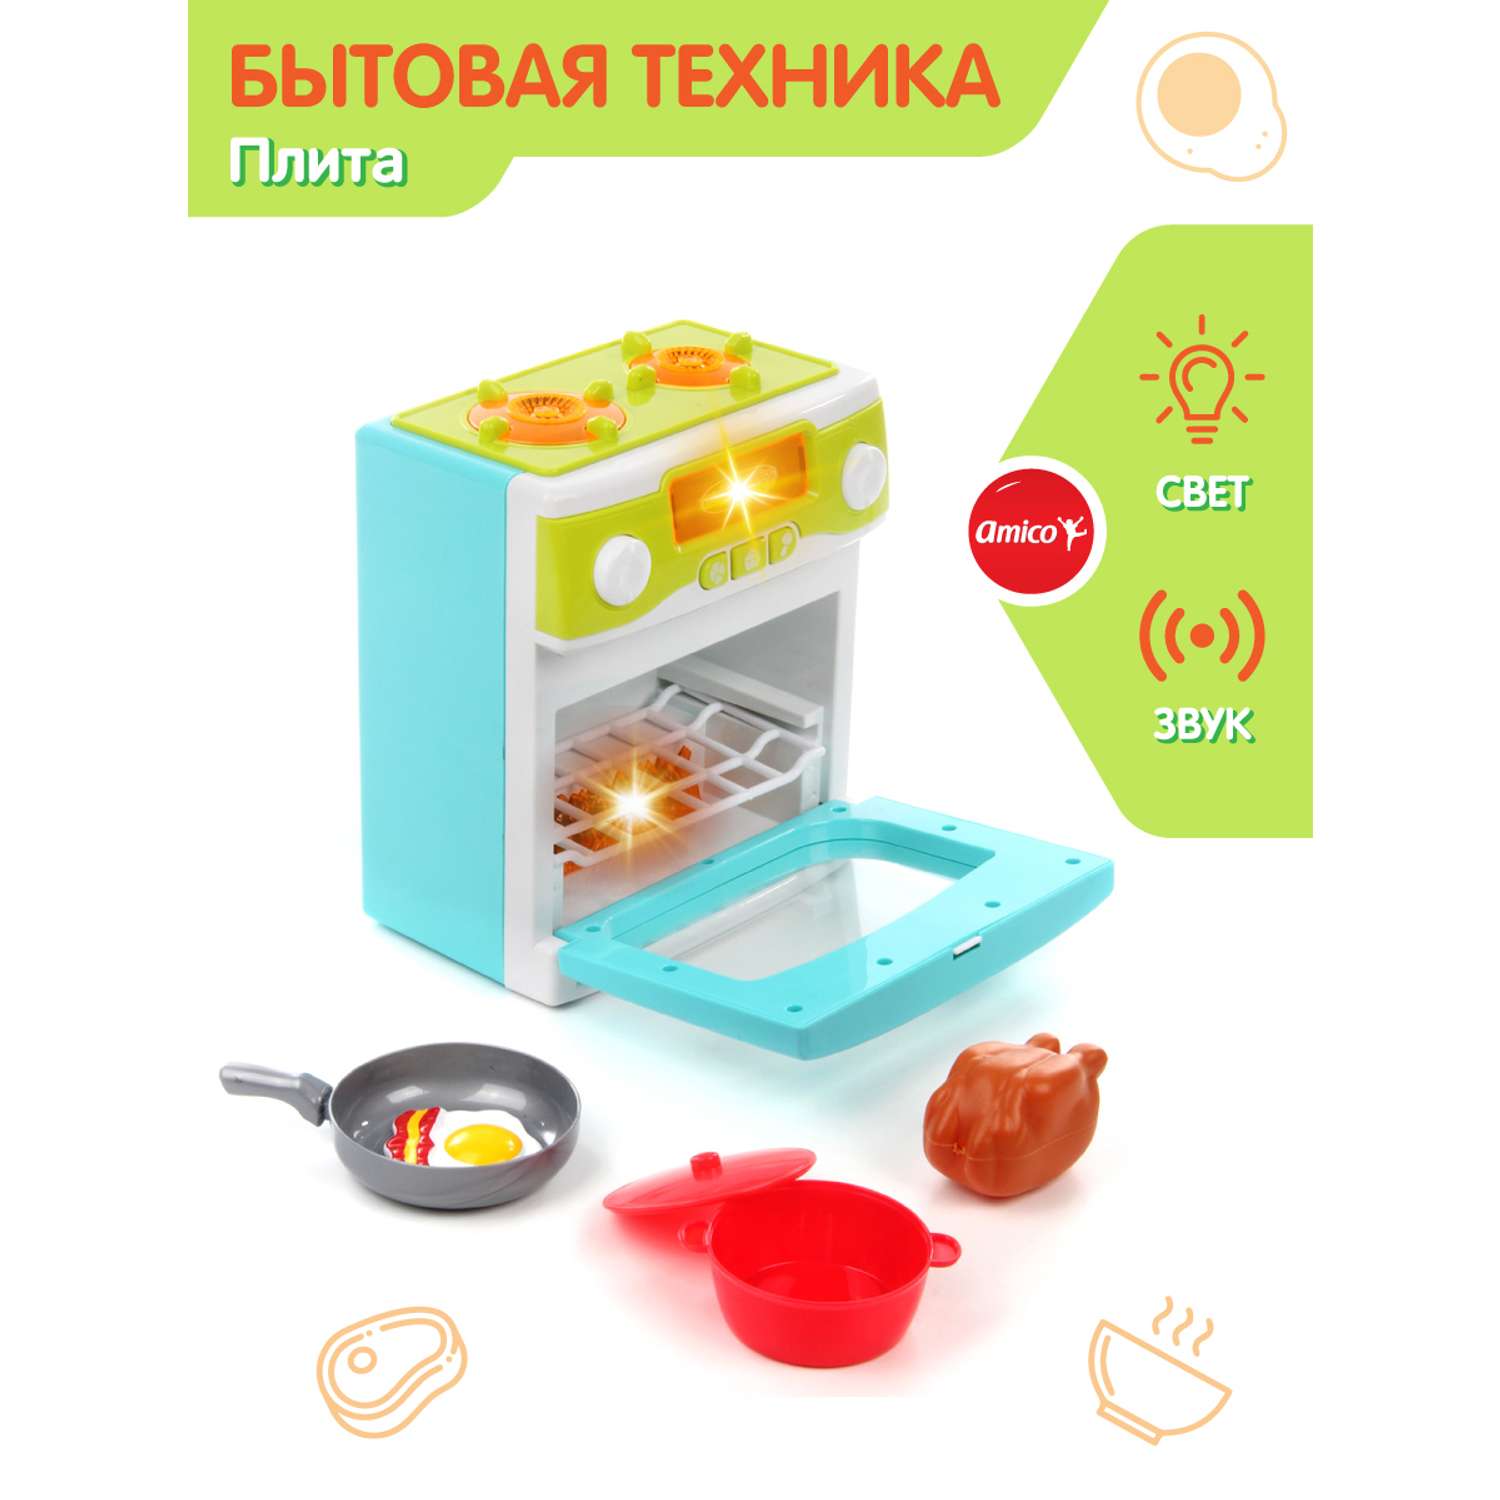 Детская кухня Amico Плита посуда игрушечные продукты свет звуки - фото 2